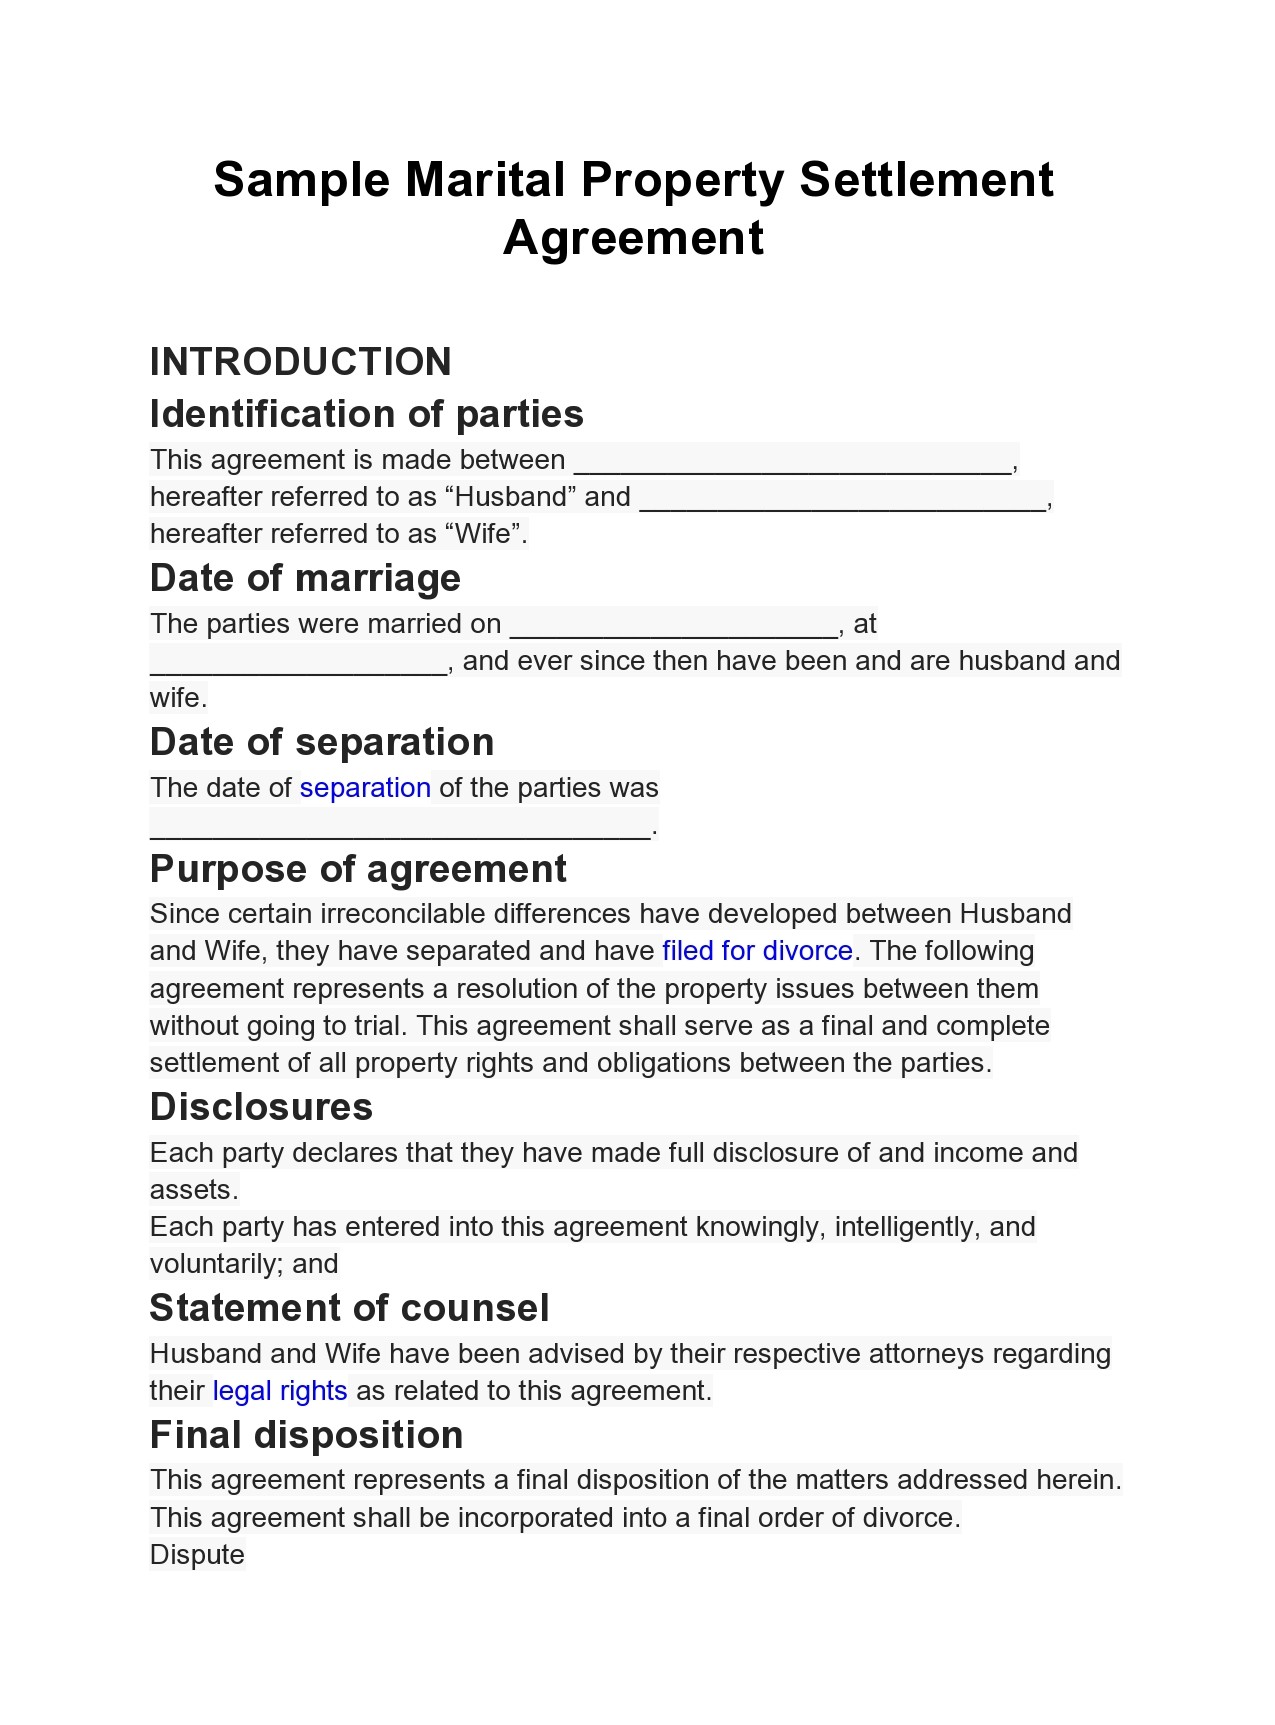 assignment of settlement agreement